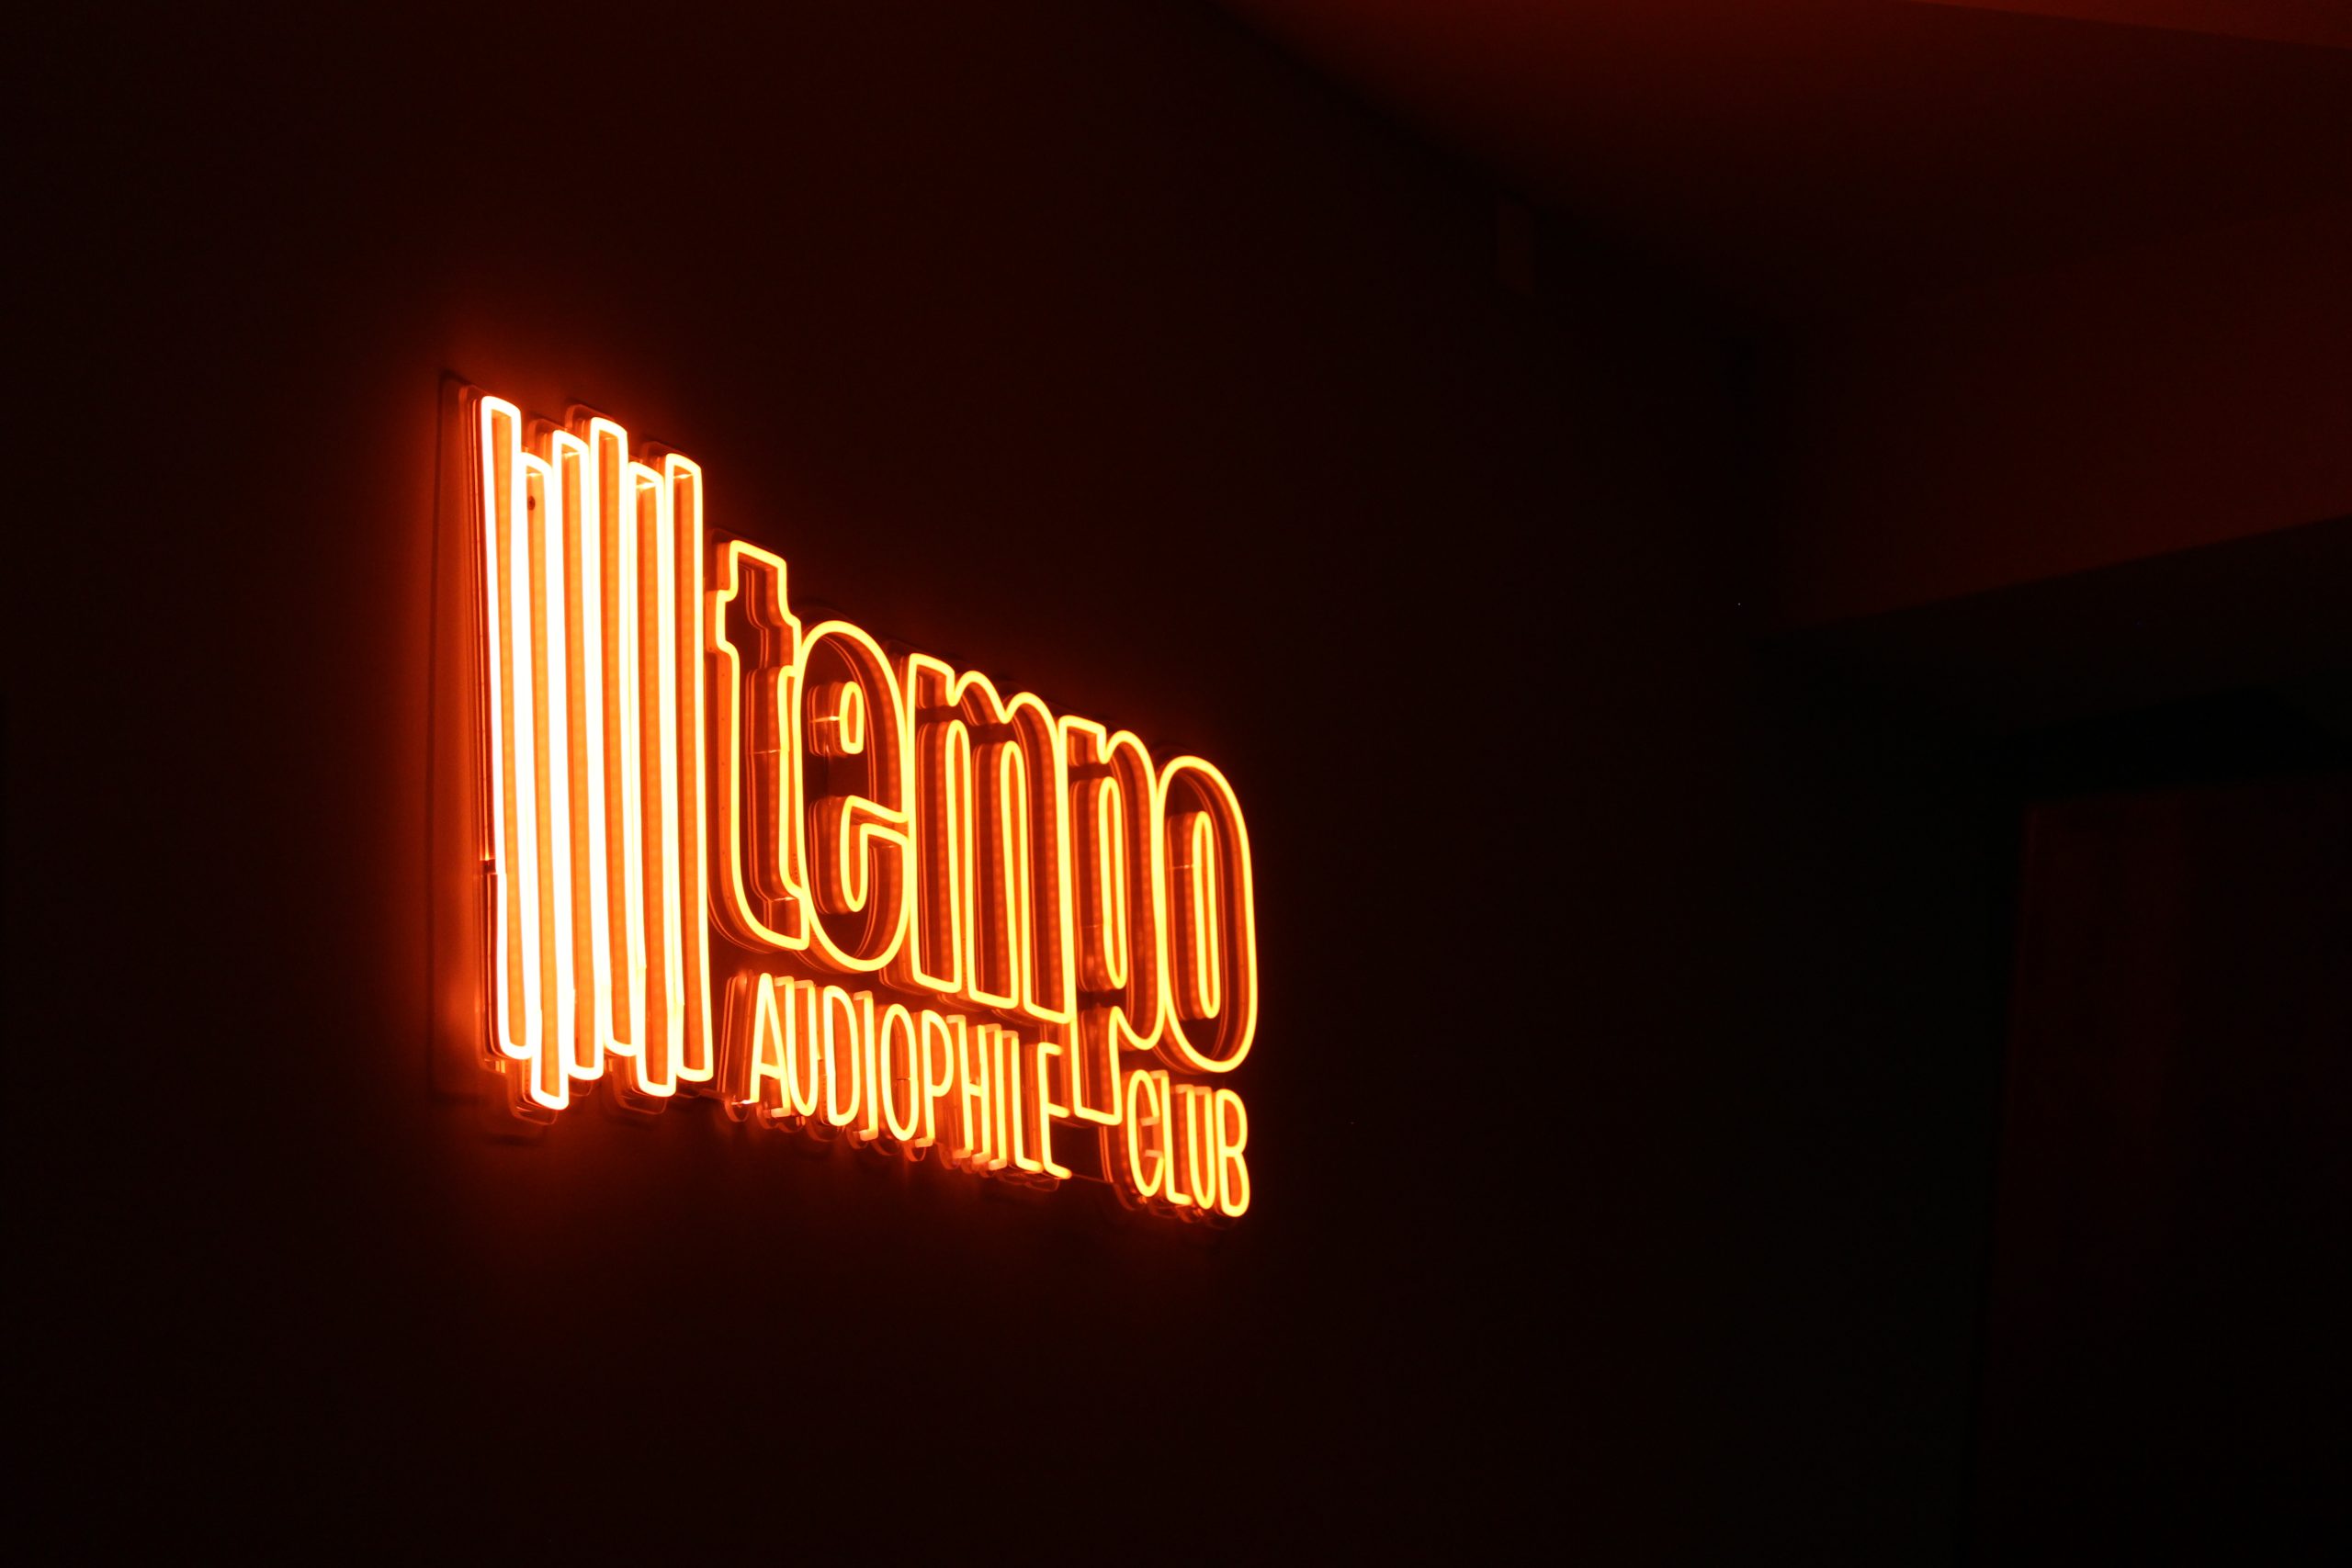 Tempo Audiophile Club: 20 años